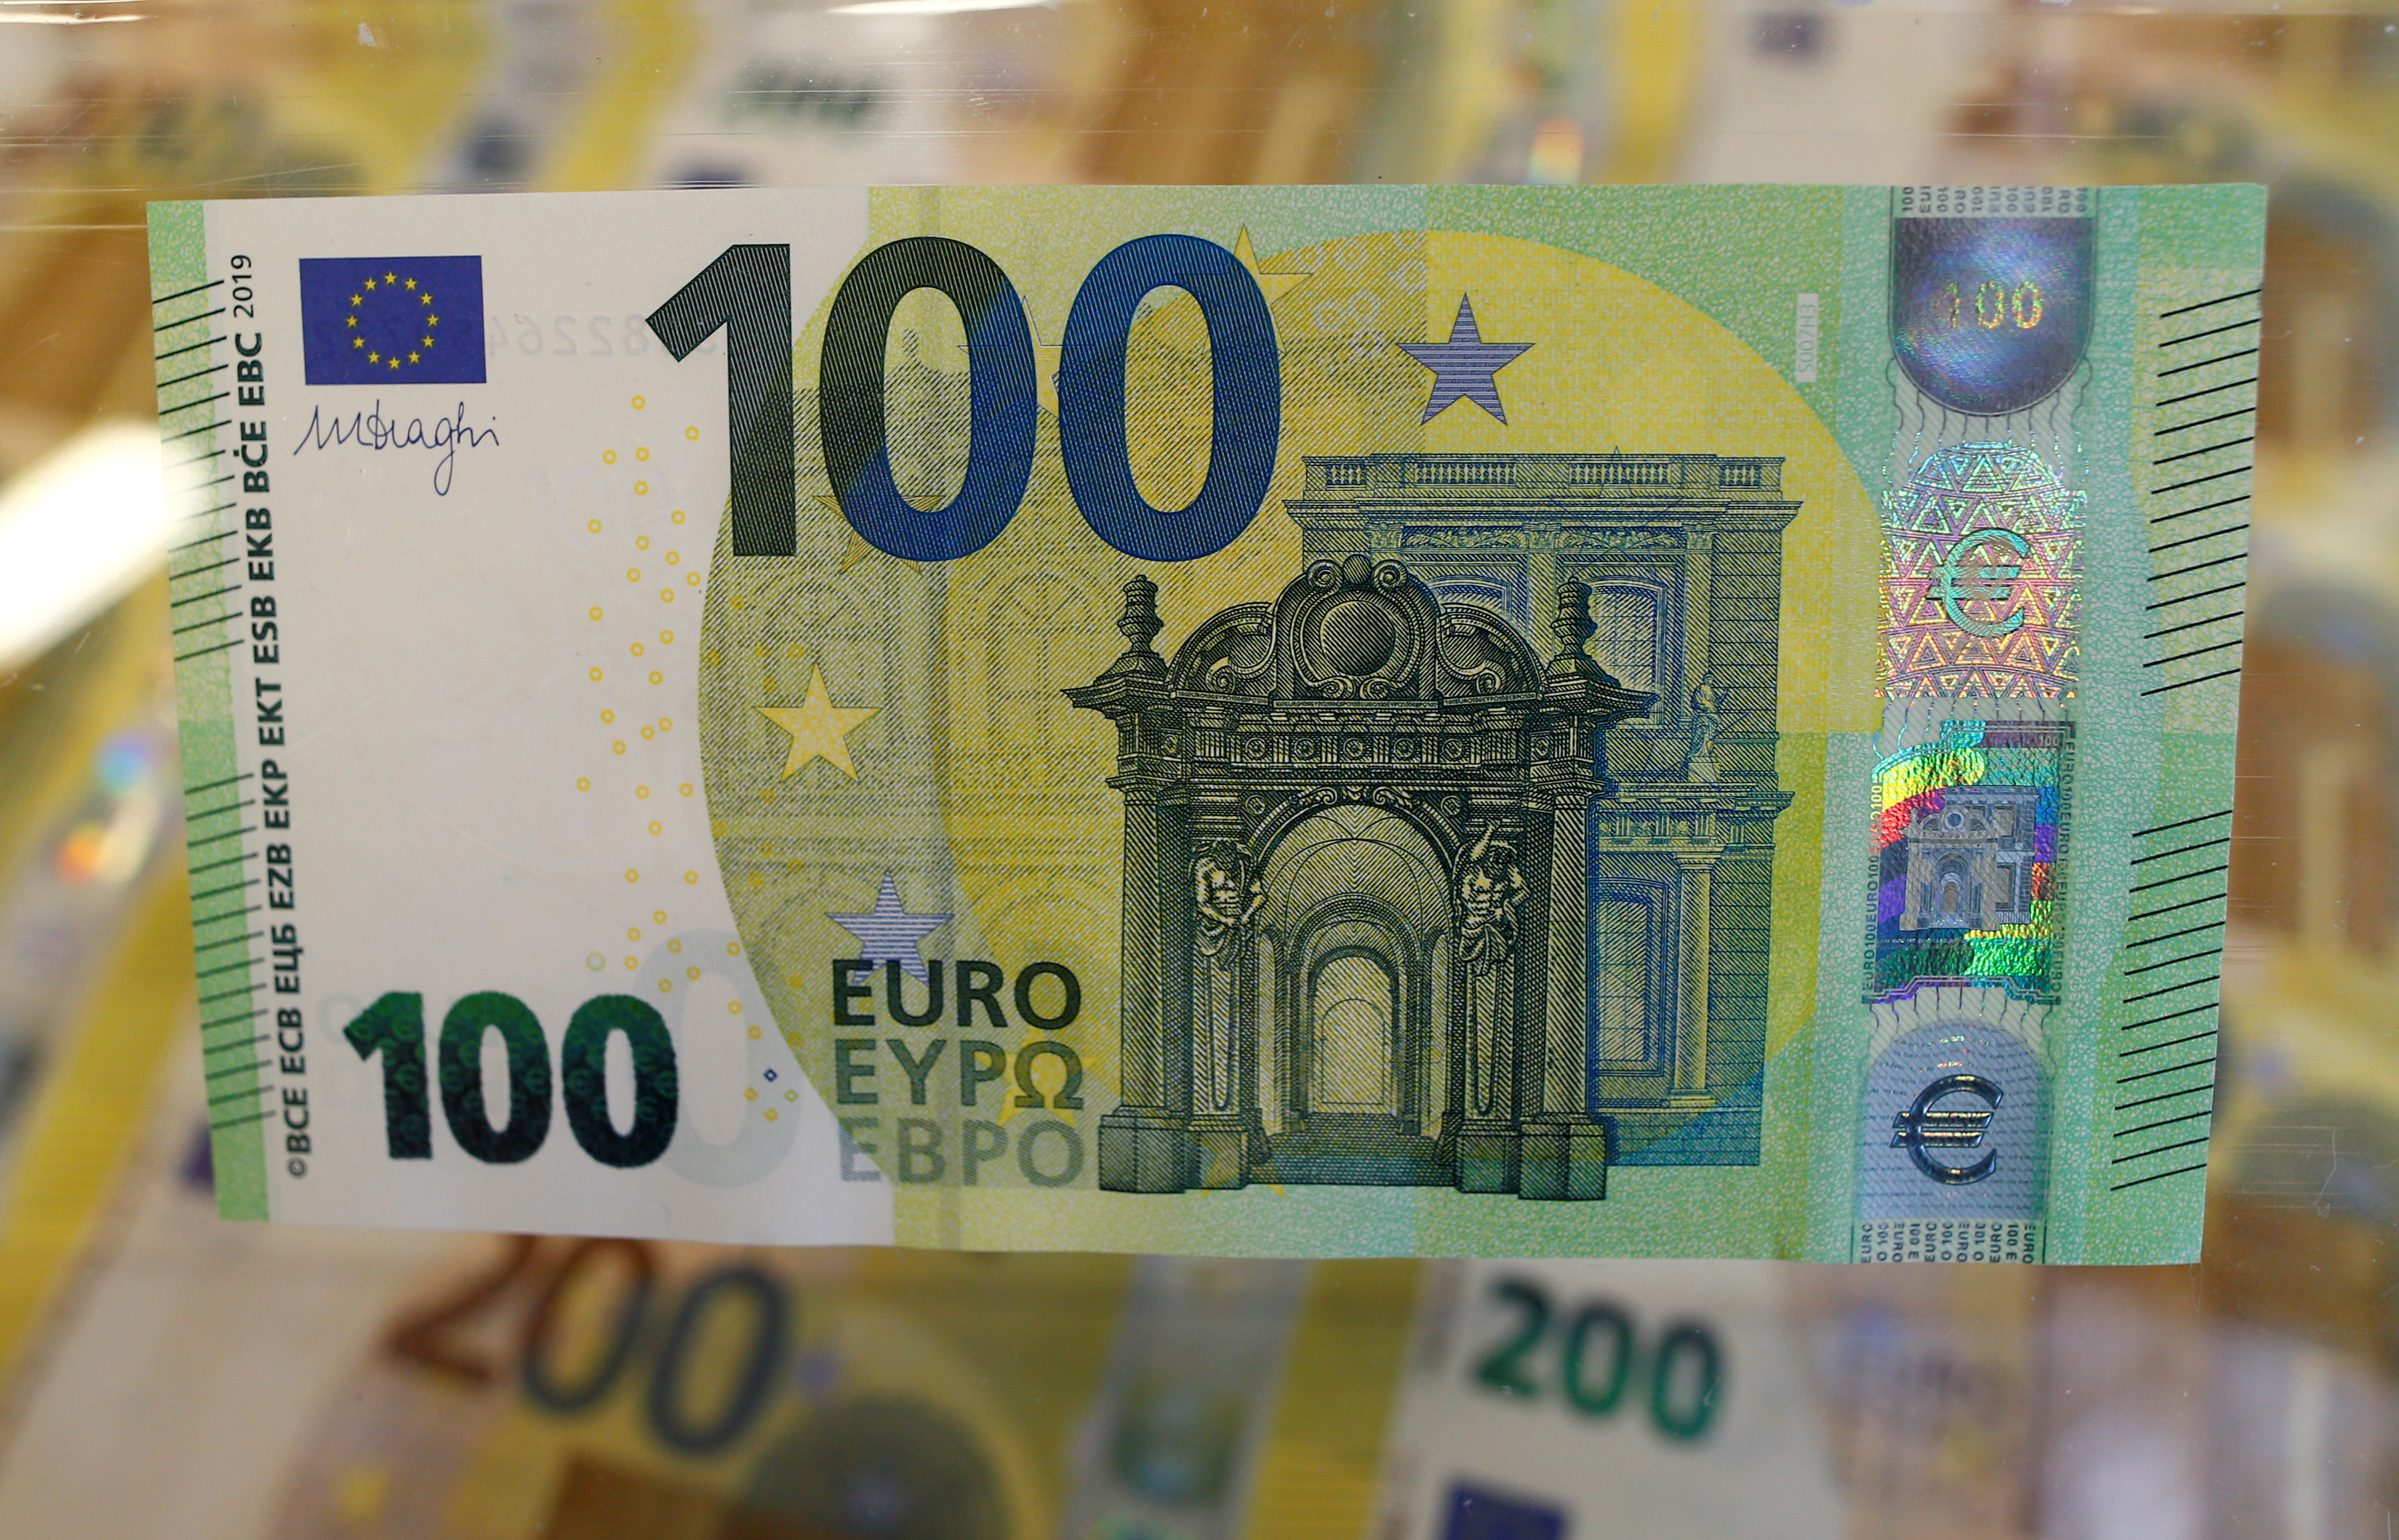 Большая купюра евро. Евро купюры 100 евро. Новая купюра 100 евро. 100 Евро купюра старого образца. Евро банкноты номинал 200.